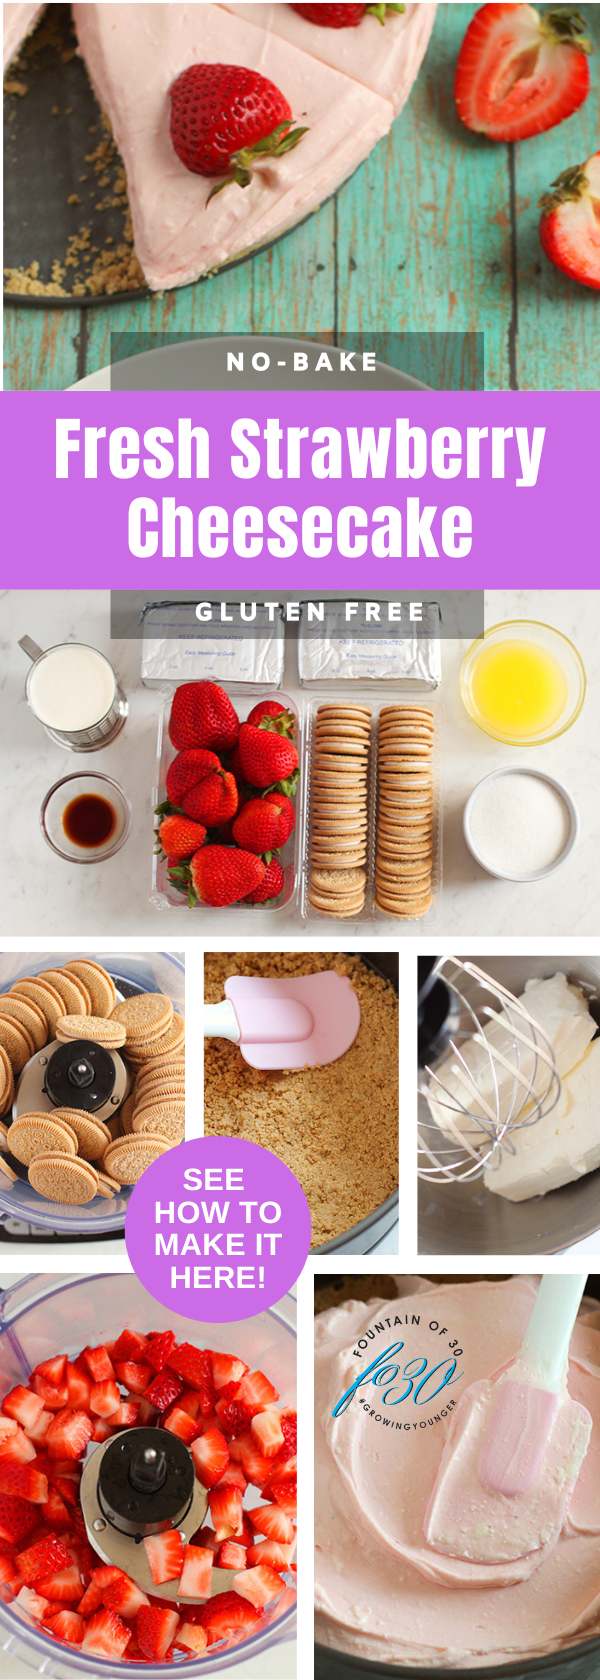 no bake dessert recipe gluten-free strawberry cheesecake fountainof30